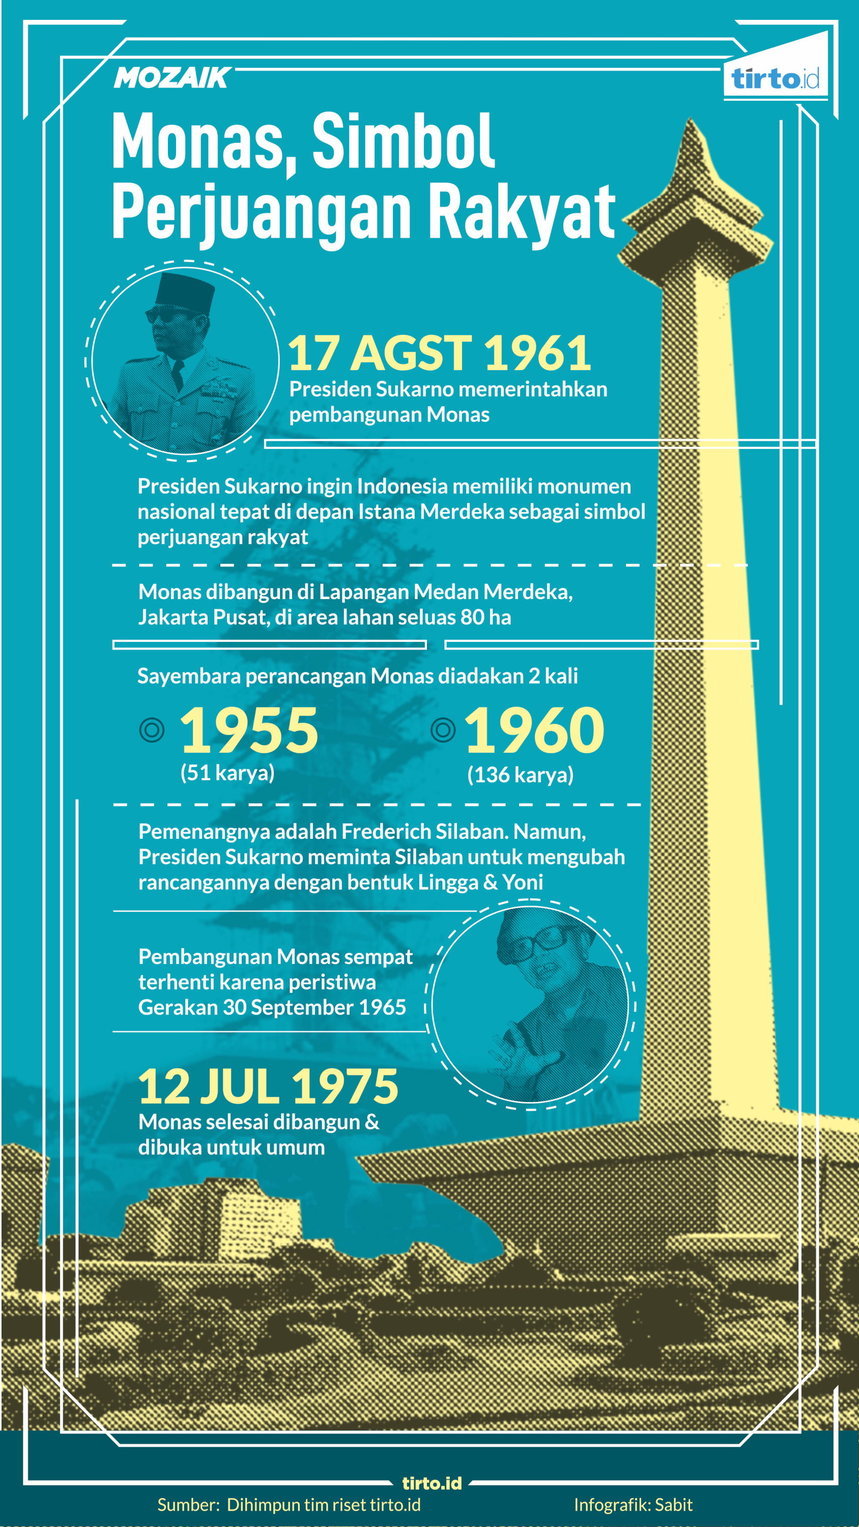 Infografik Mozaik Monas